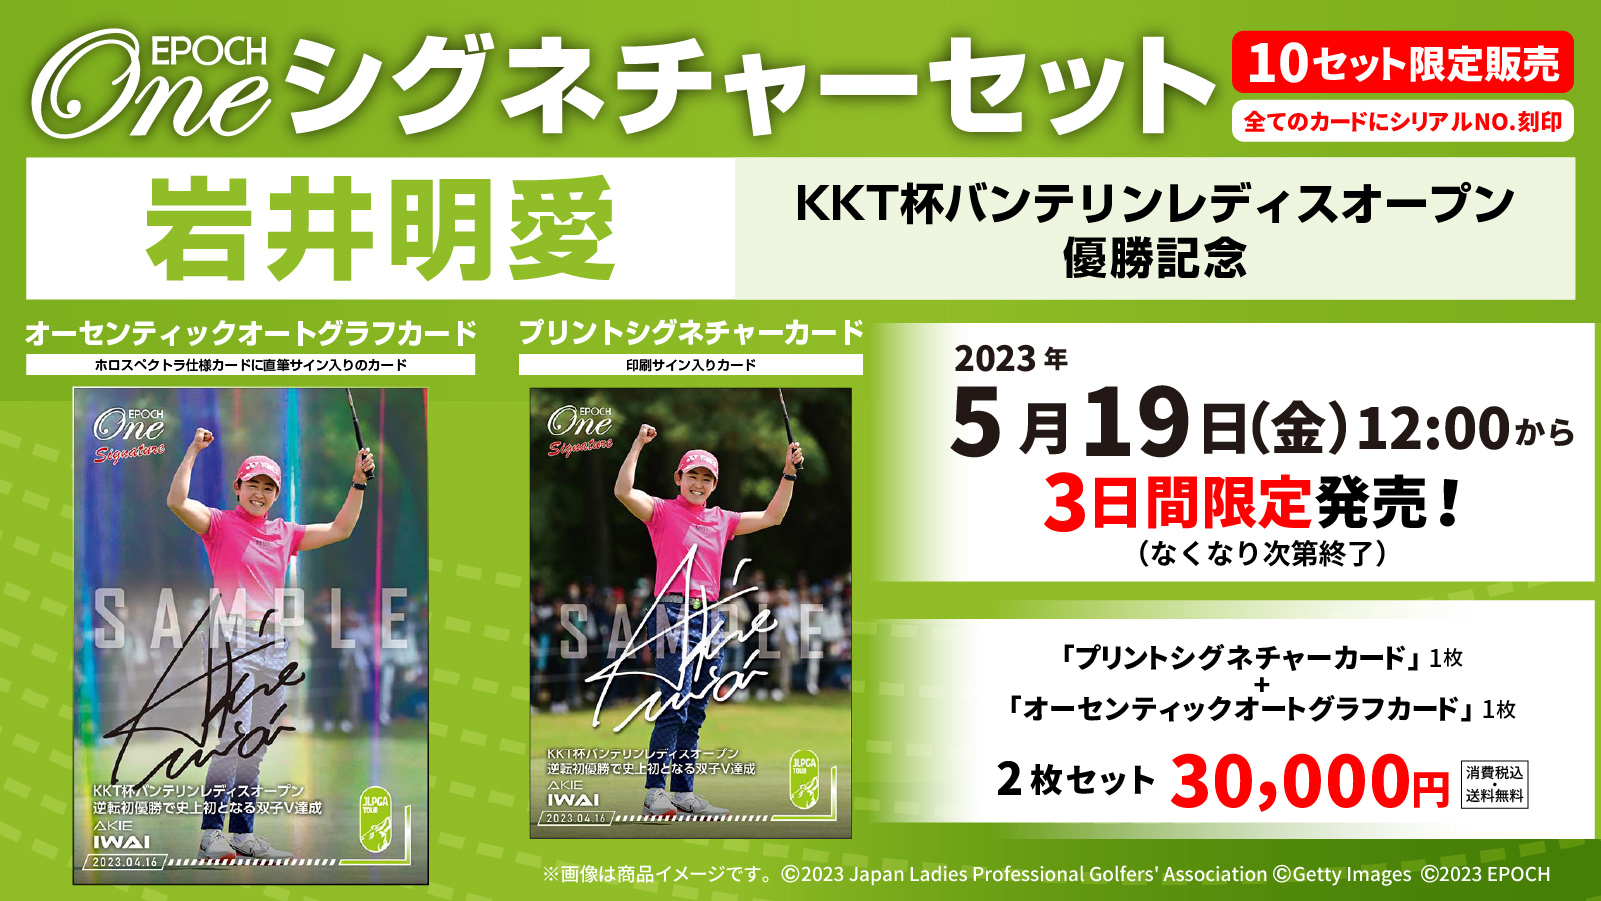 【岩井明愛】シグネチャーセット『KKT杯バンテリンレディスオープン 優勝記念』